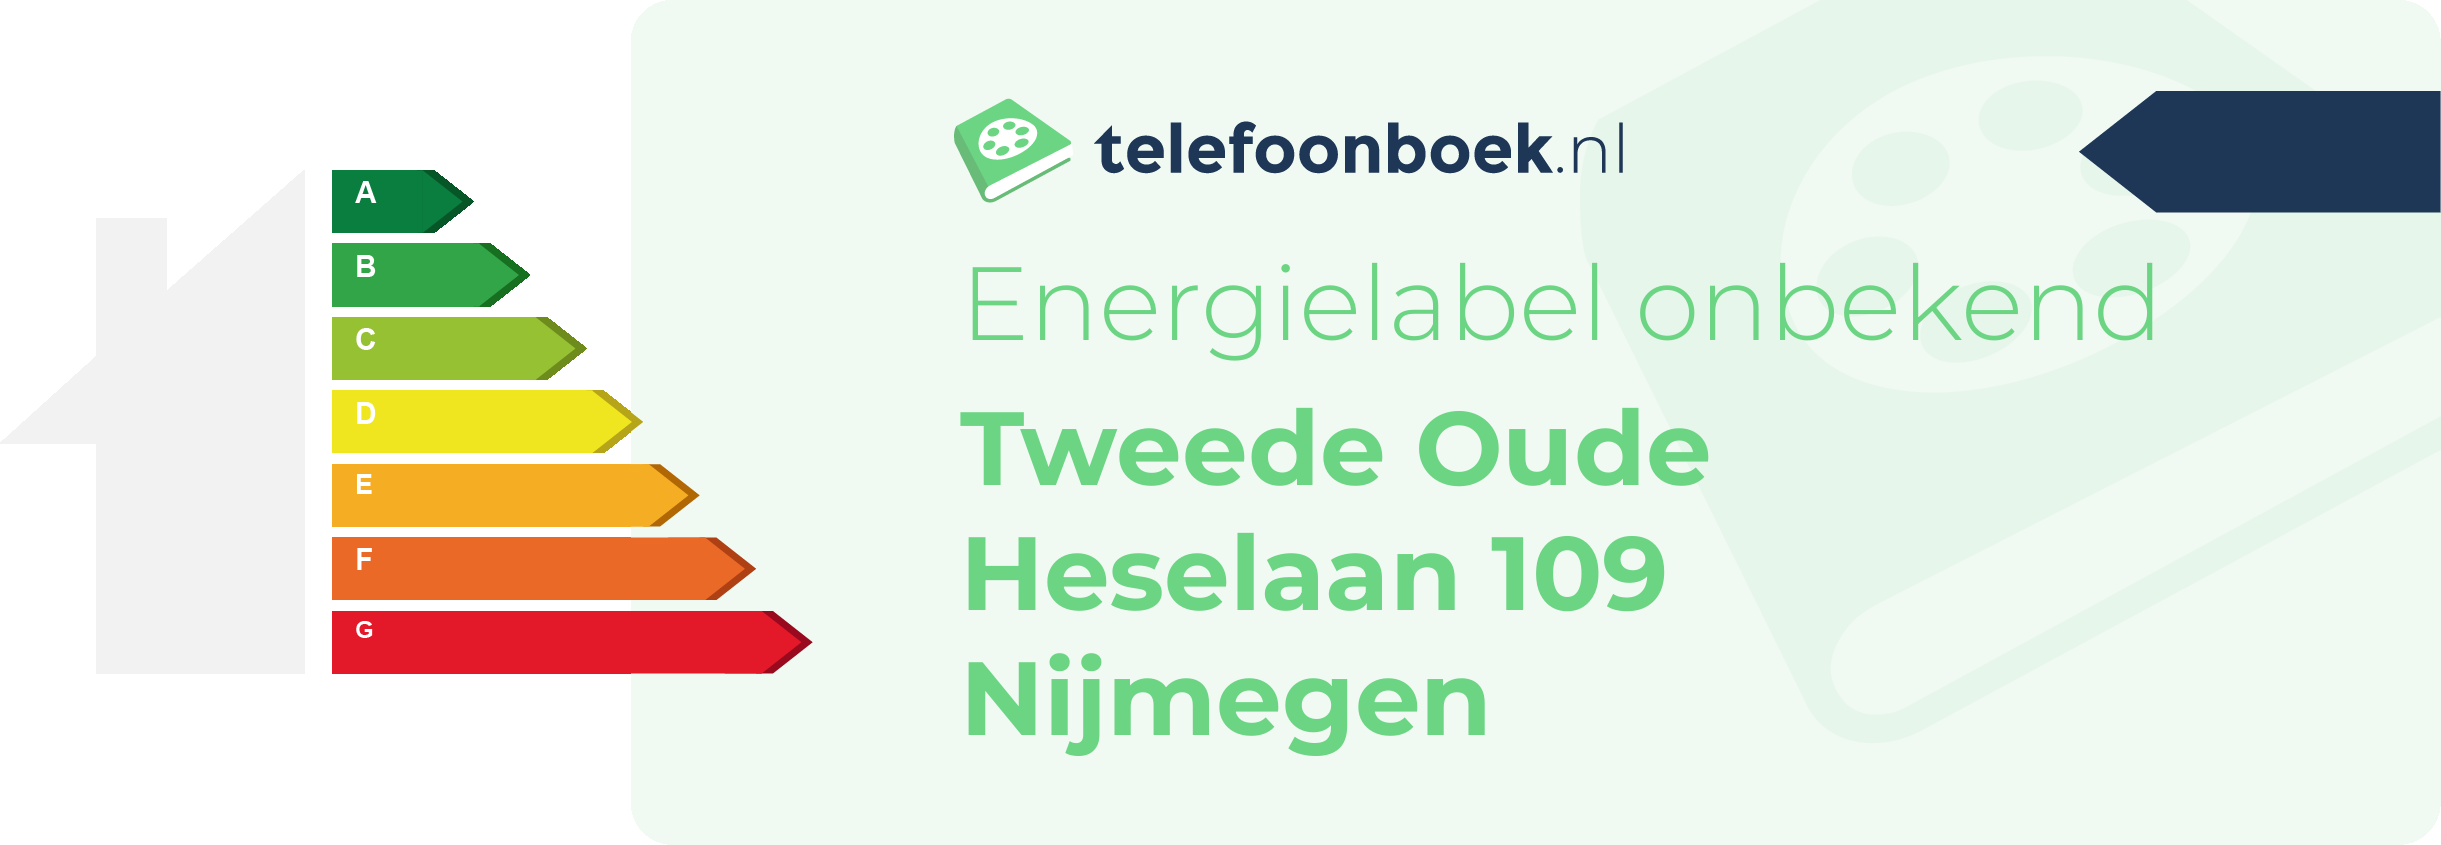 Energielabel Tweede Oude Heselaan 109 Nijmegen